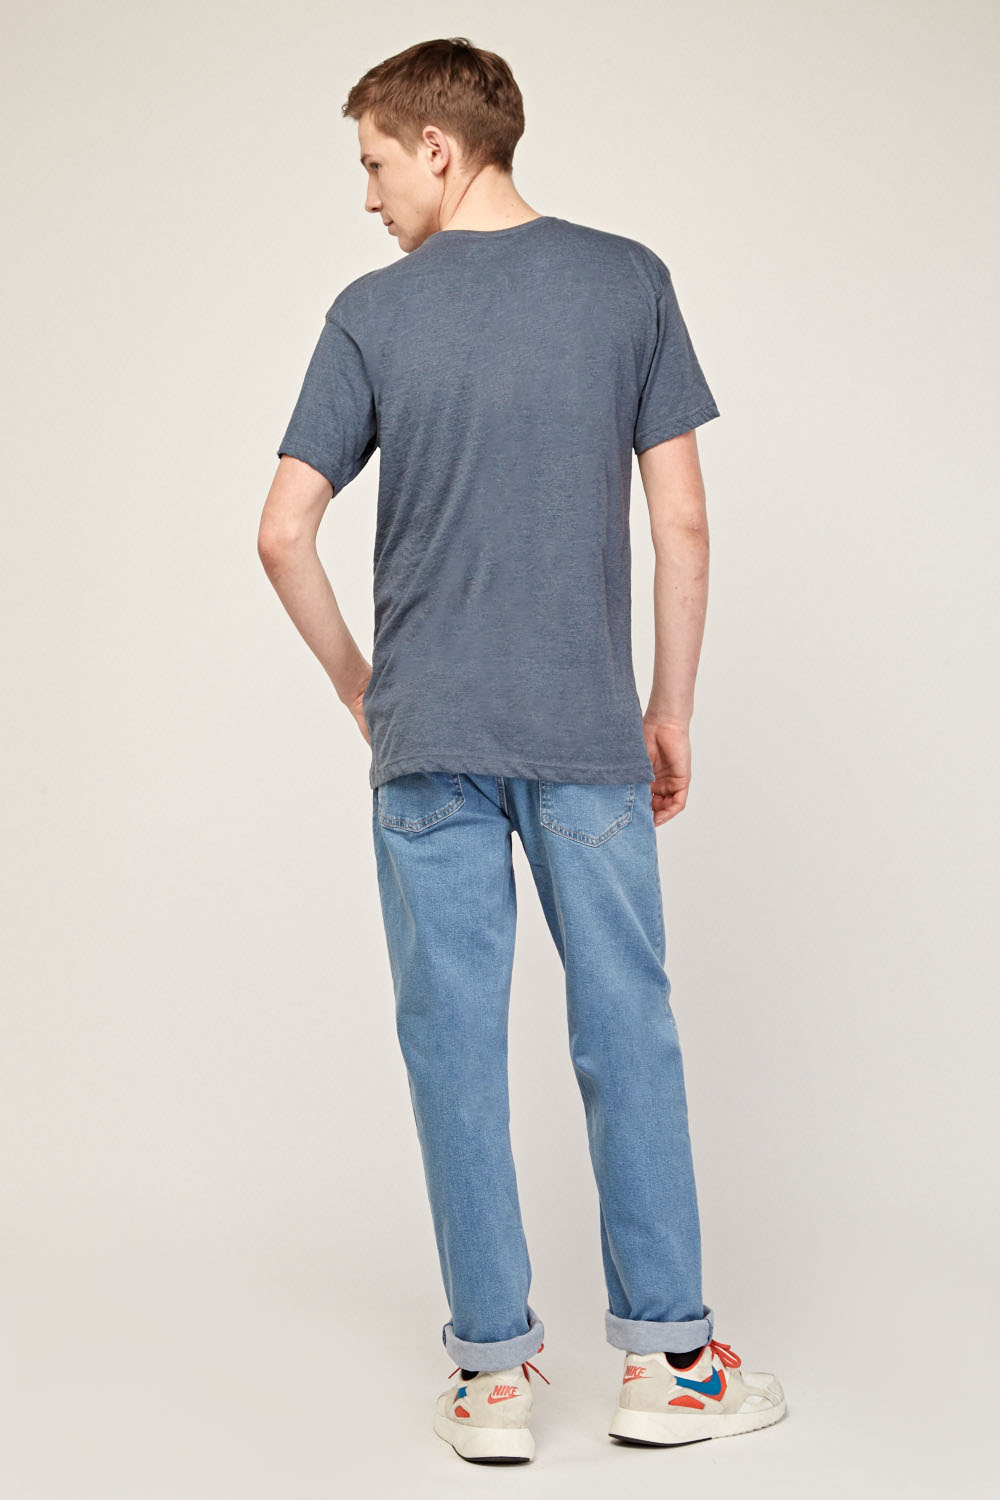 Rolled Up Hem Denim Jeans - Just $6